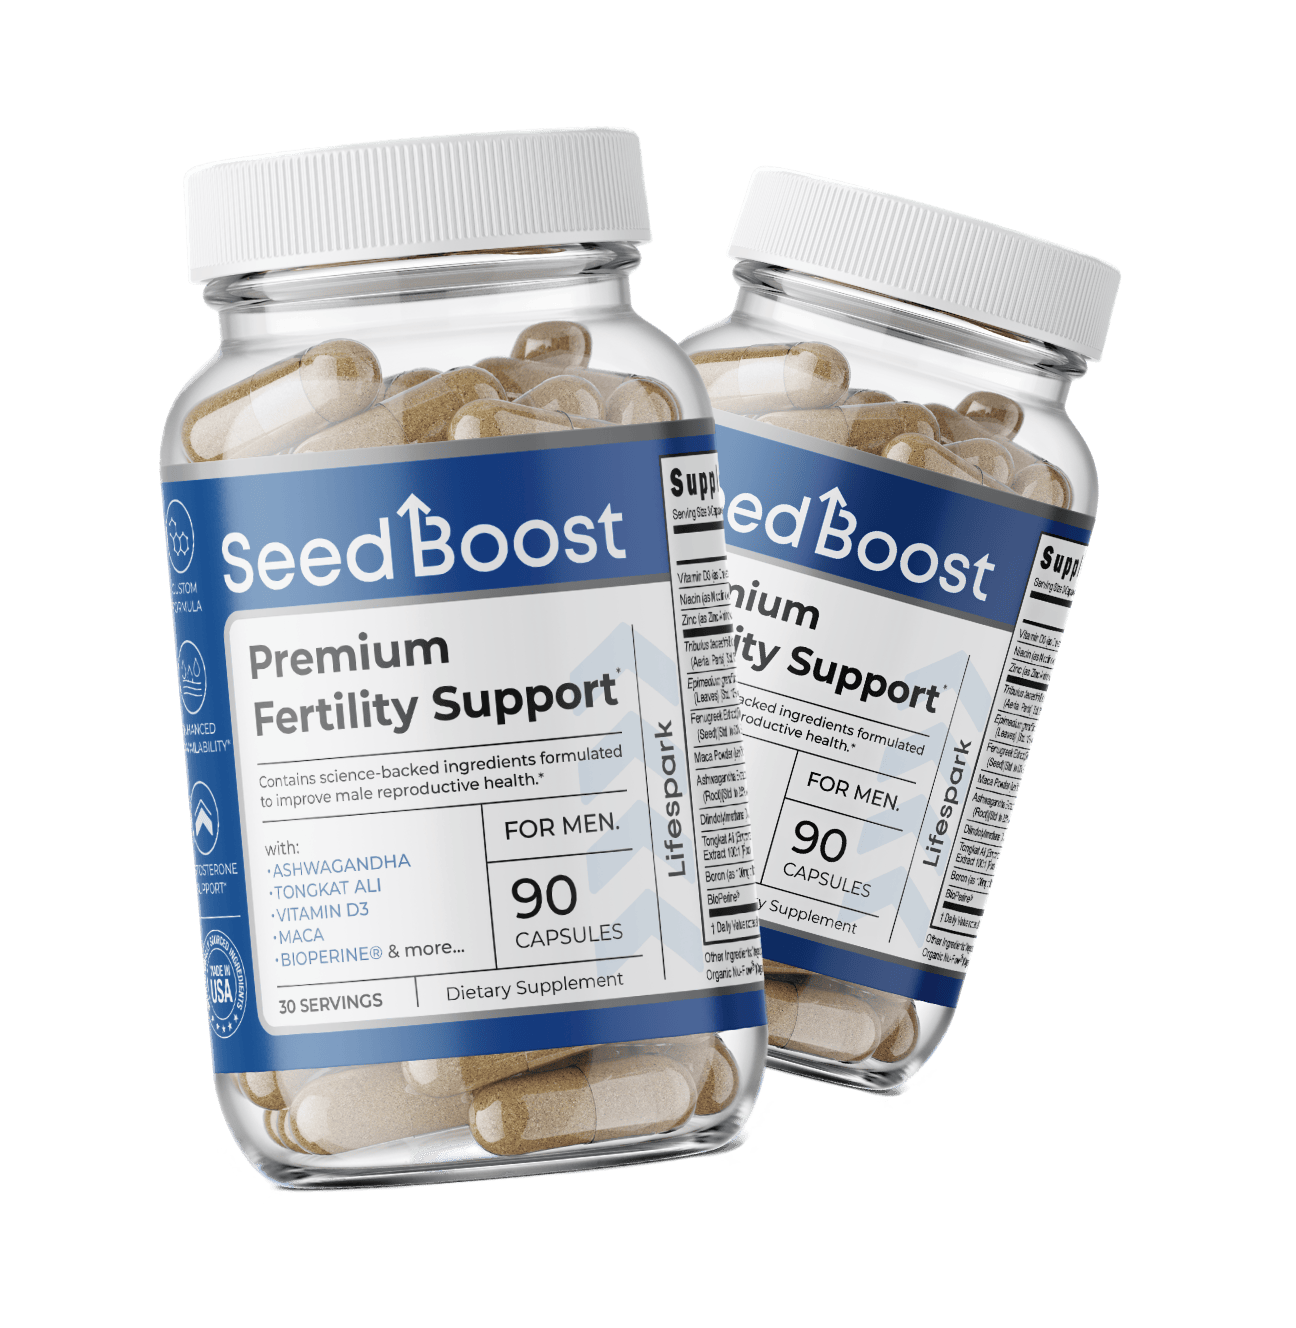 Two bottles of SeedBoost male fertility supplement